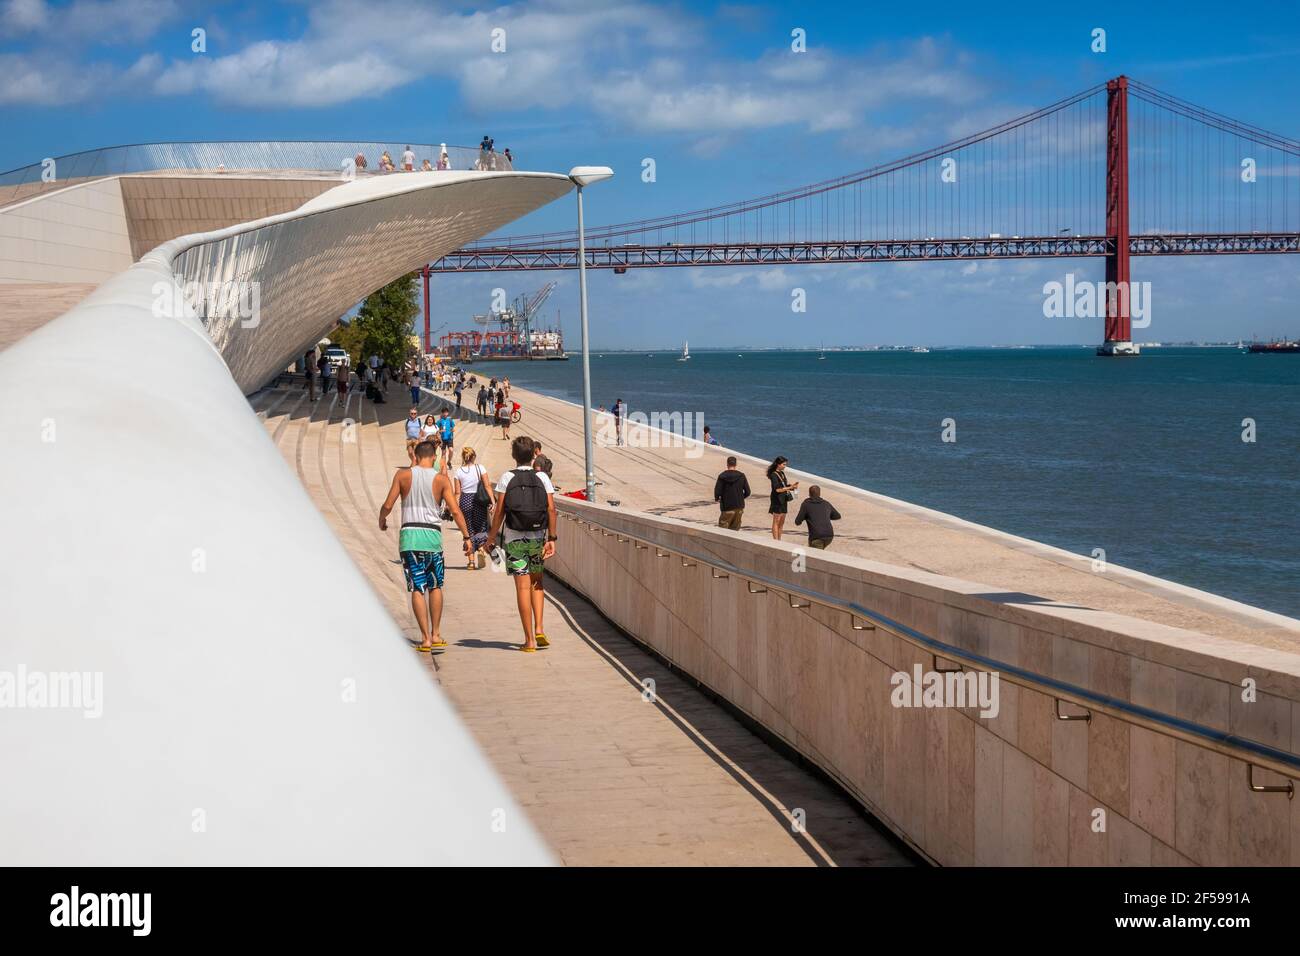 Musée d'Art, d'Architecture et de technologie avec avril 25 Pont en arrière-plan enjambant le Tage, Belem, Lisbonne, Portugal Banque D'Images